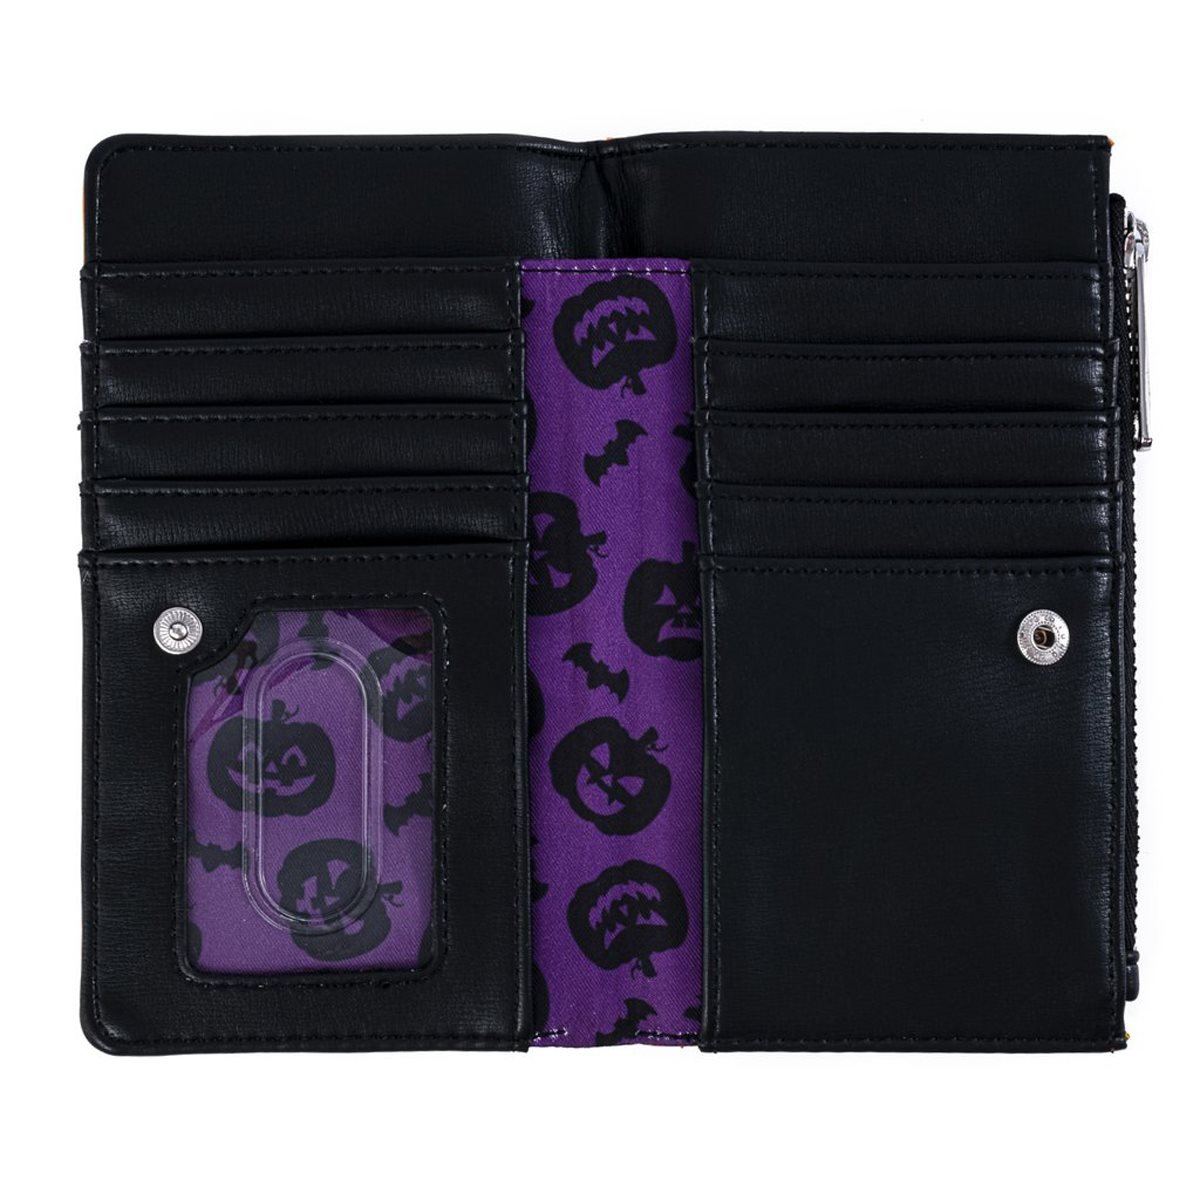 Halloween Pumpkin Flap Wallet